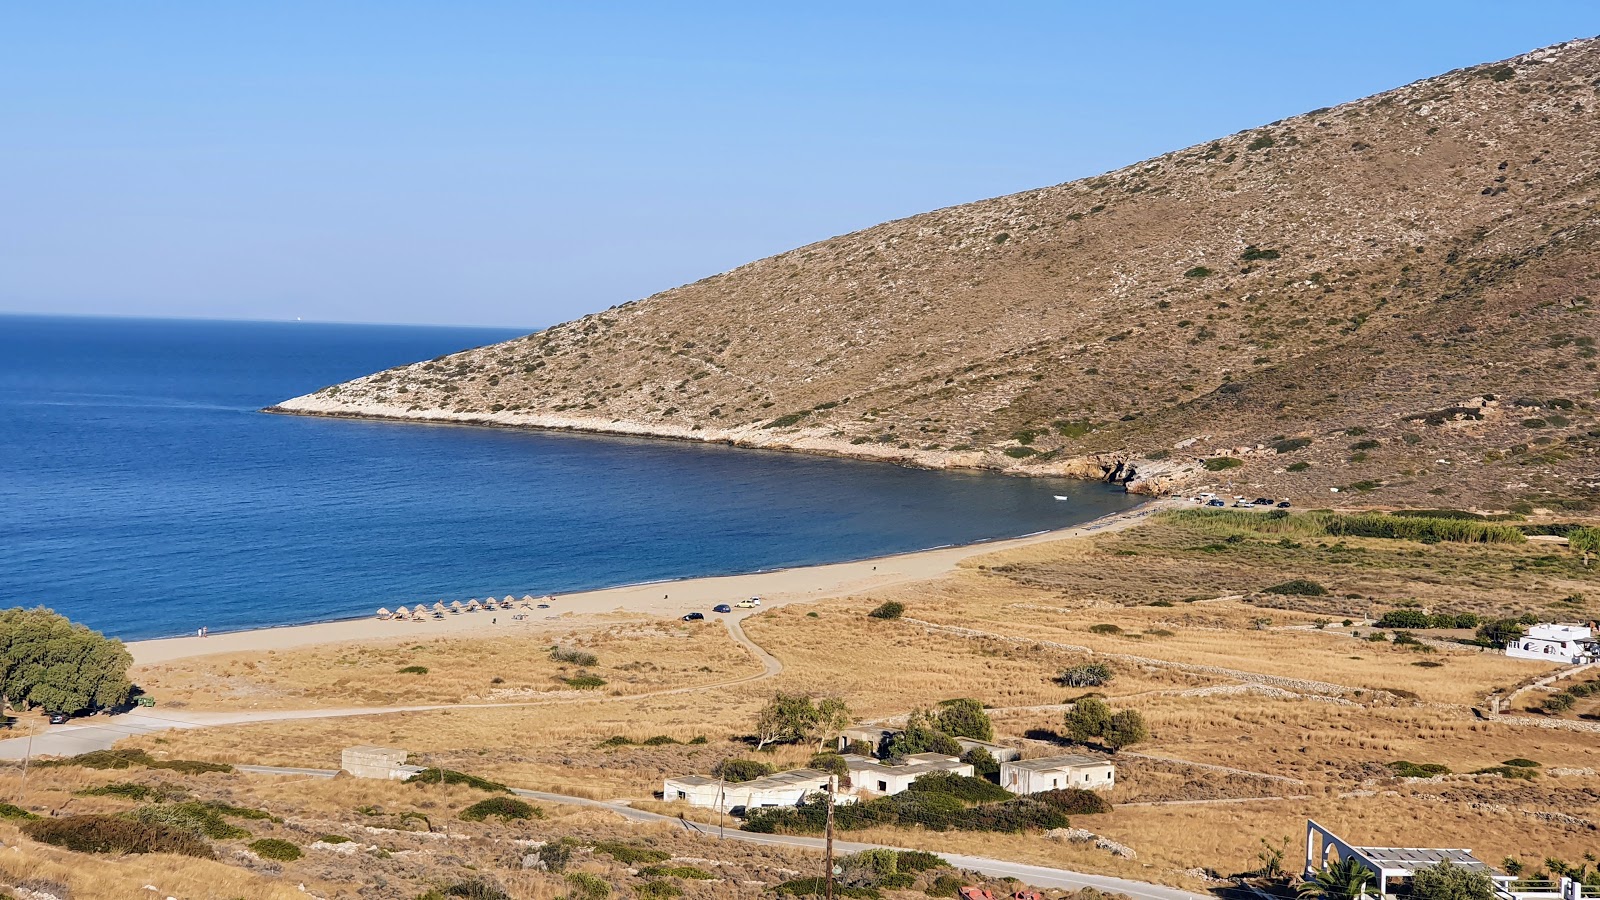 Agios Theodoti beach'in fotoğrafı geniş ile birlikte